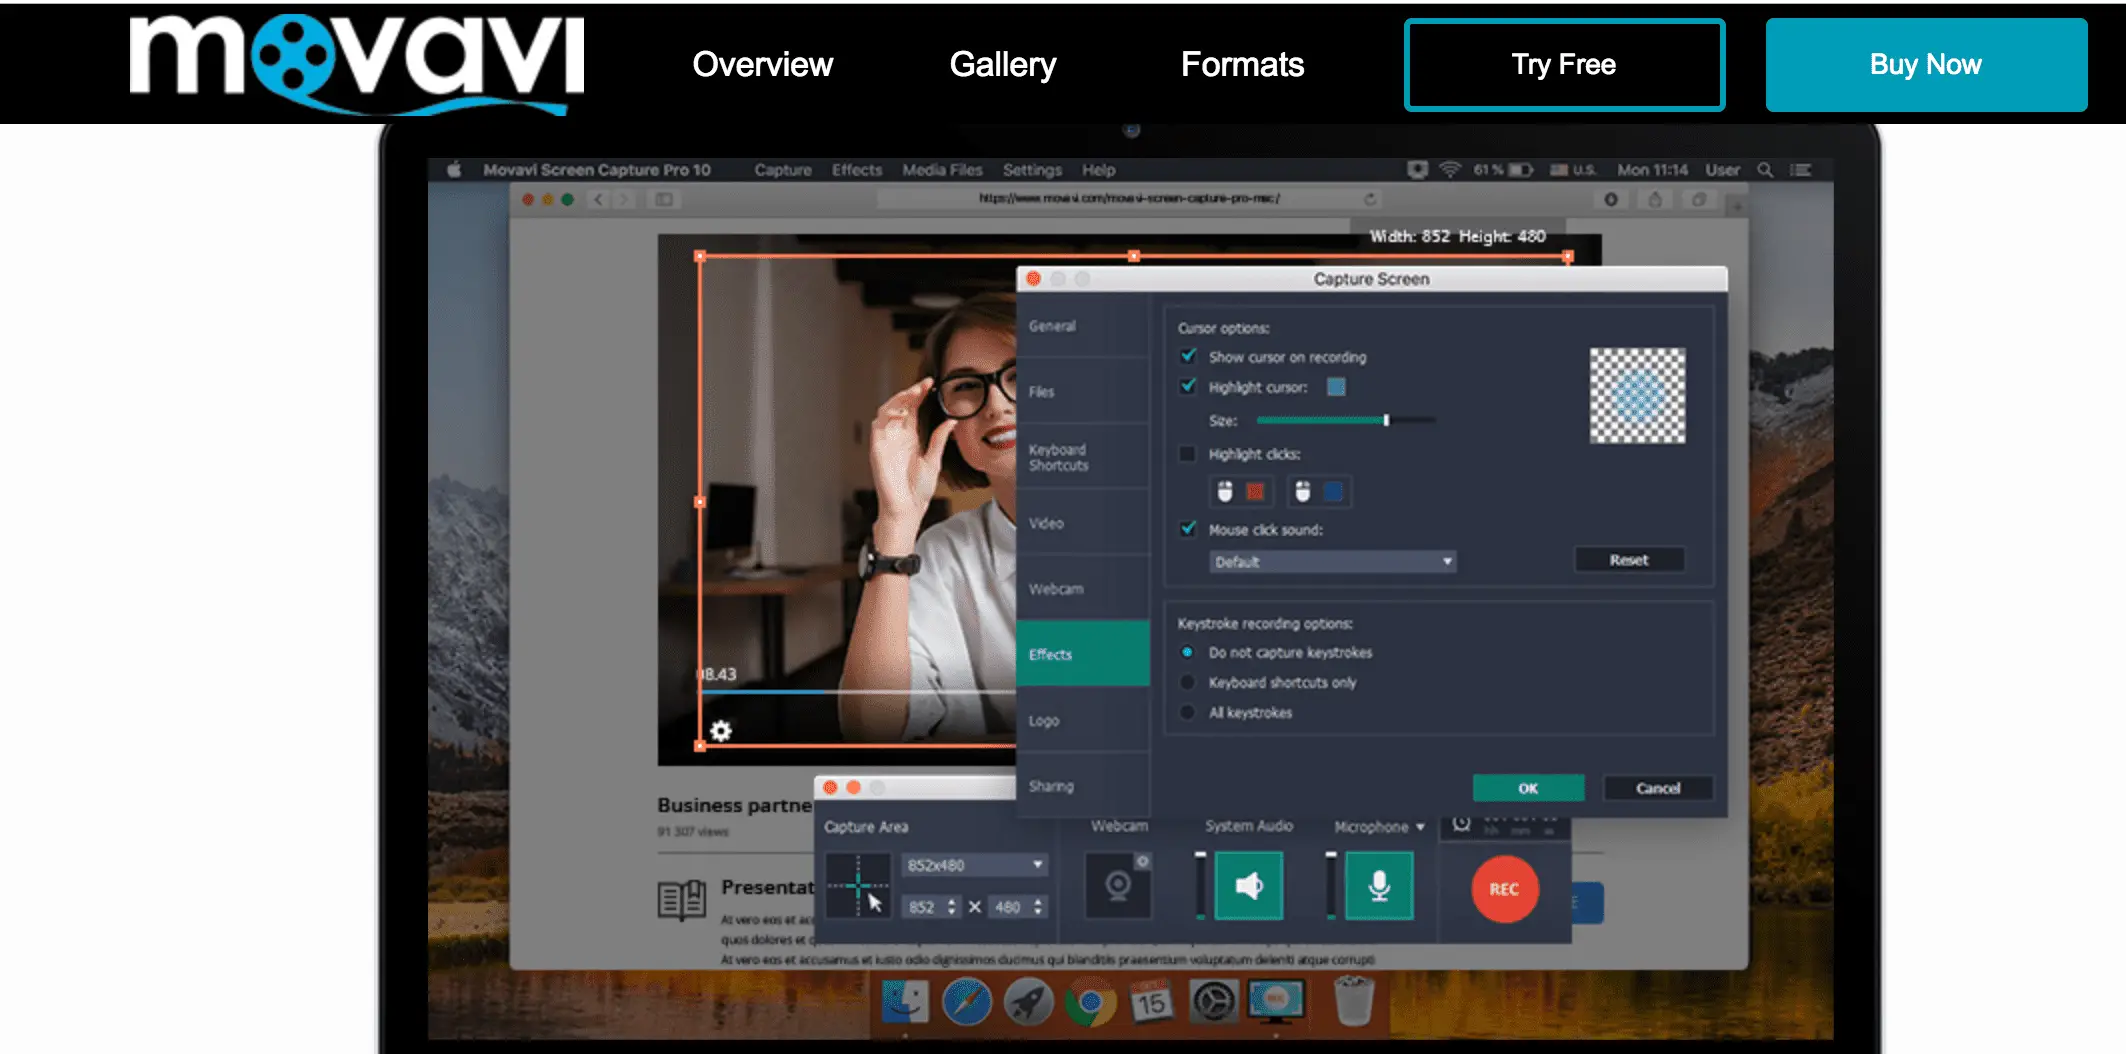 Captura de tela do site da Movavi mostrando a aparência do gravador de tela